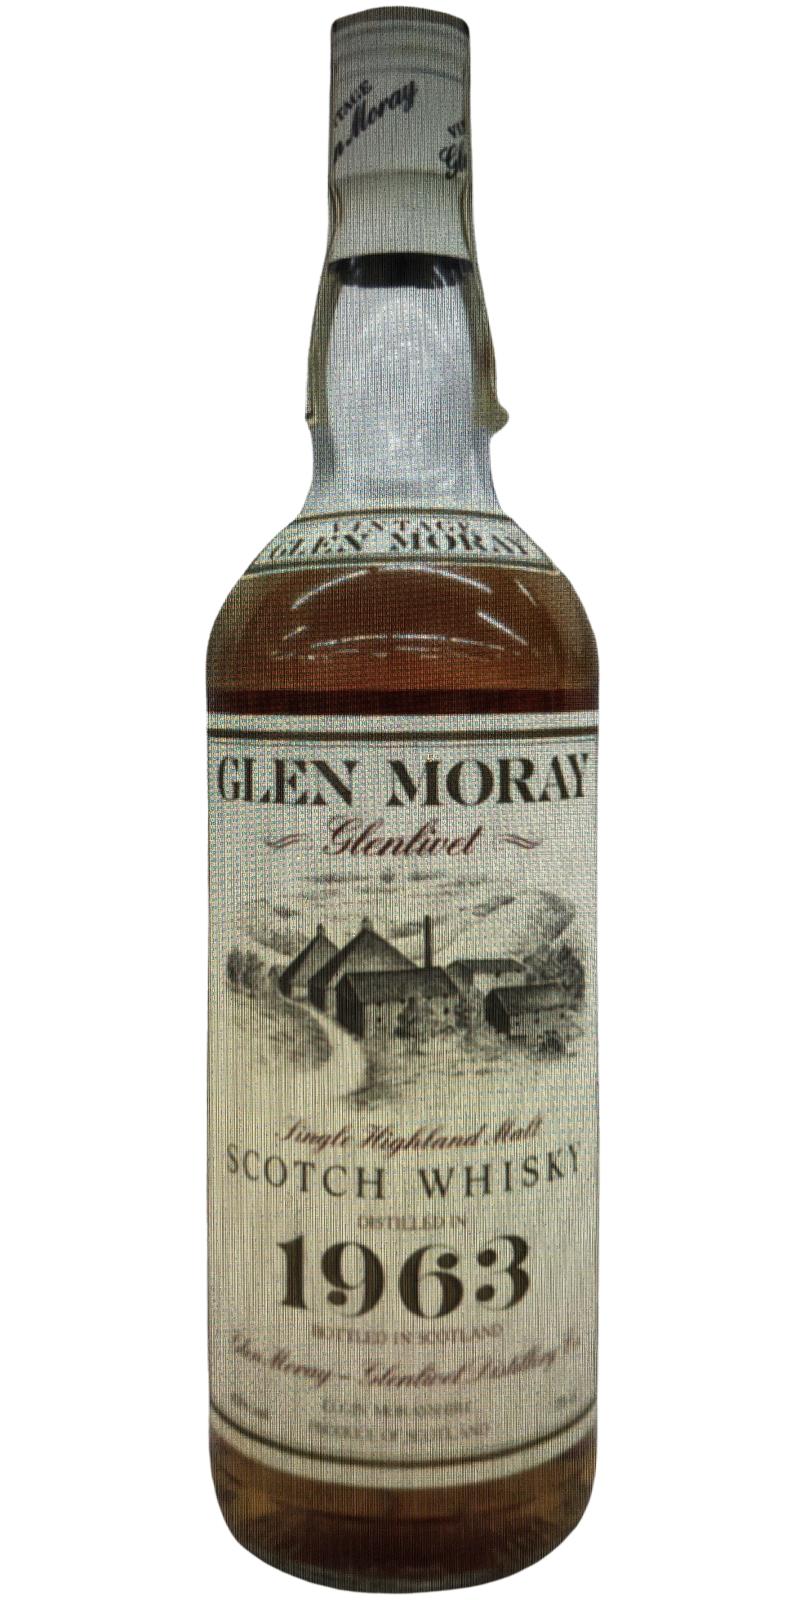 Glen Moray 1963